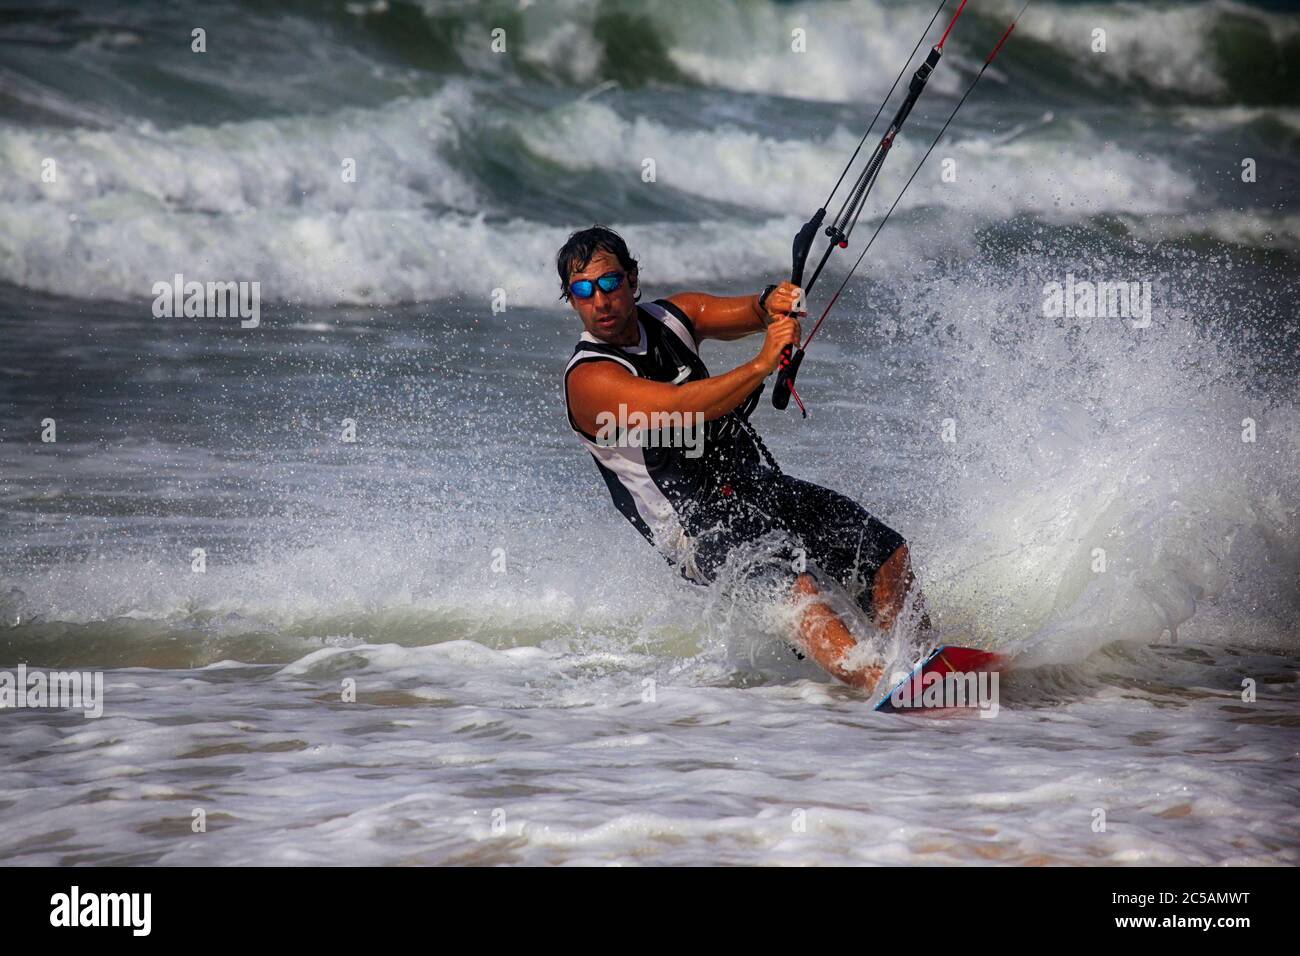 Kiteboarder enjoy surfing in ocean. Vietnam Stock Photo